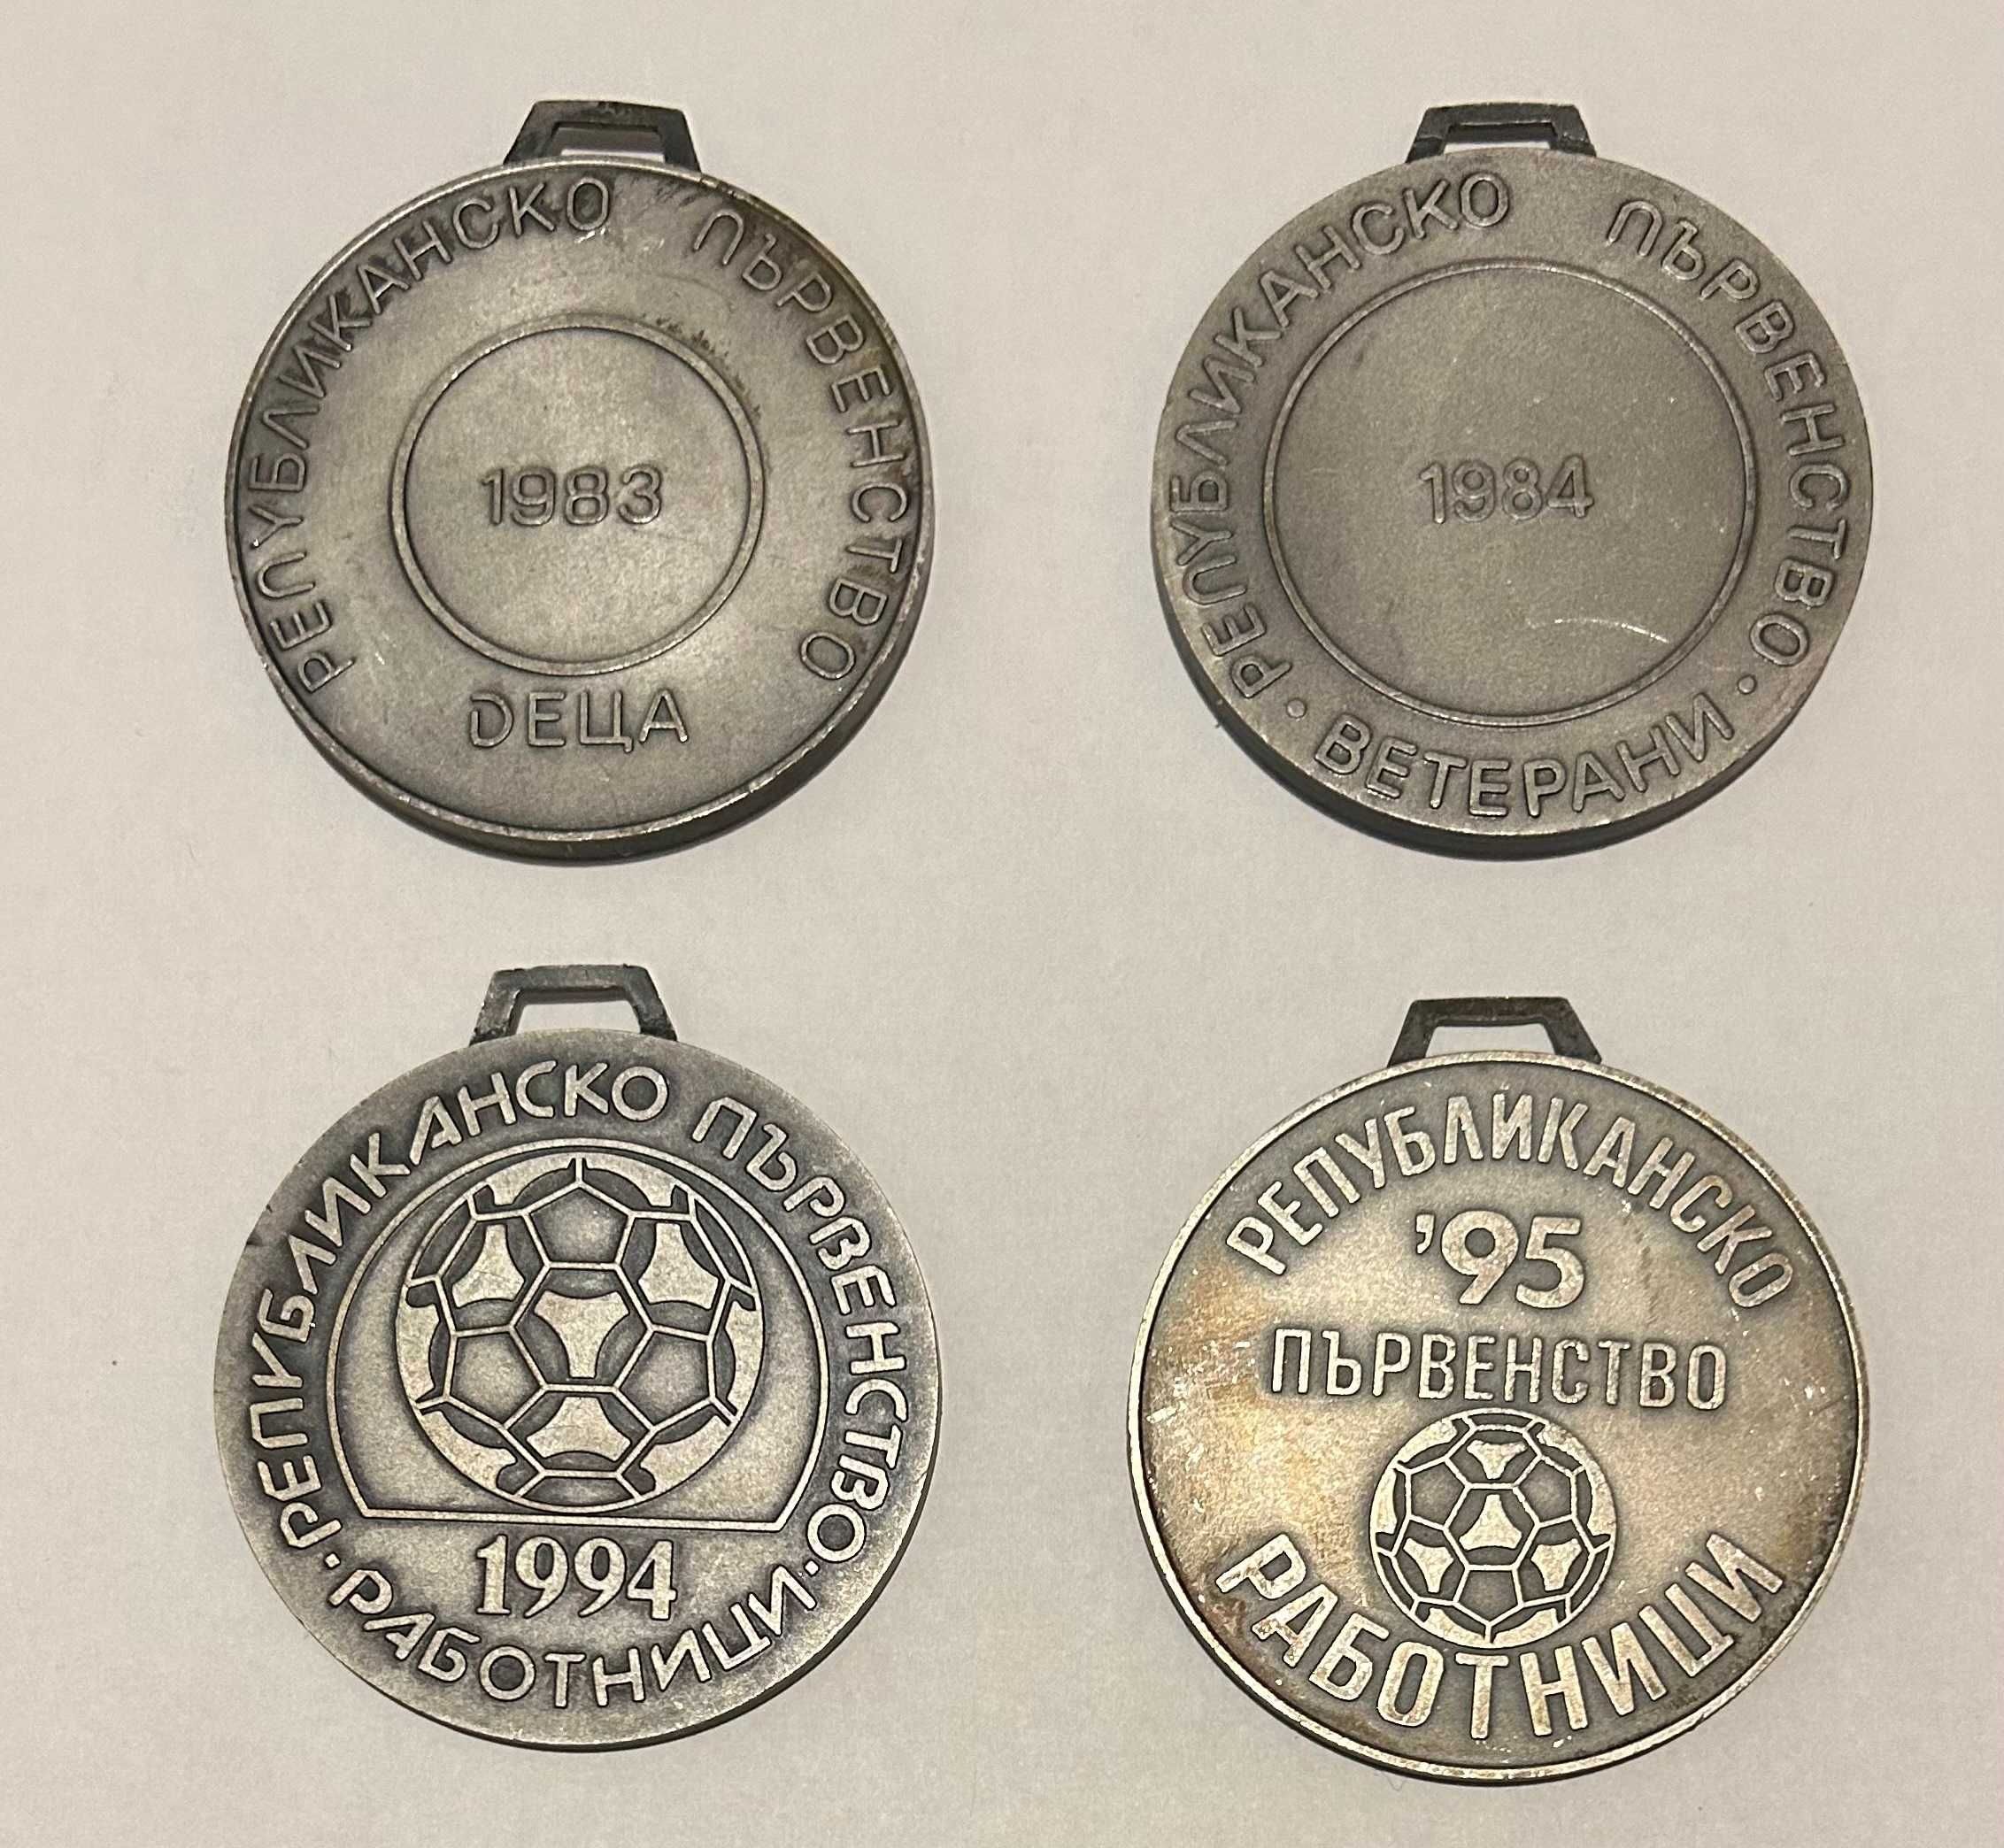 Футболни медали БФС златен сребърен бронзов плакет футбол